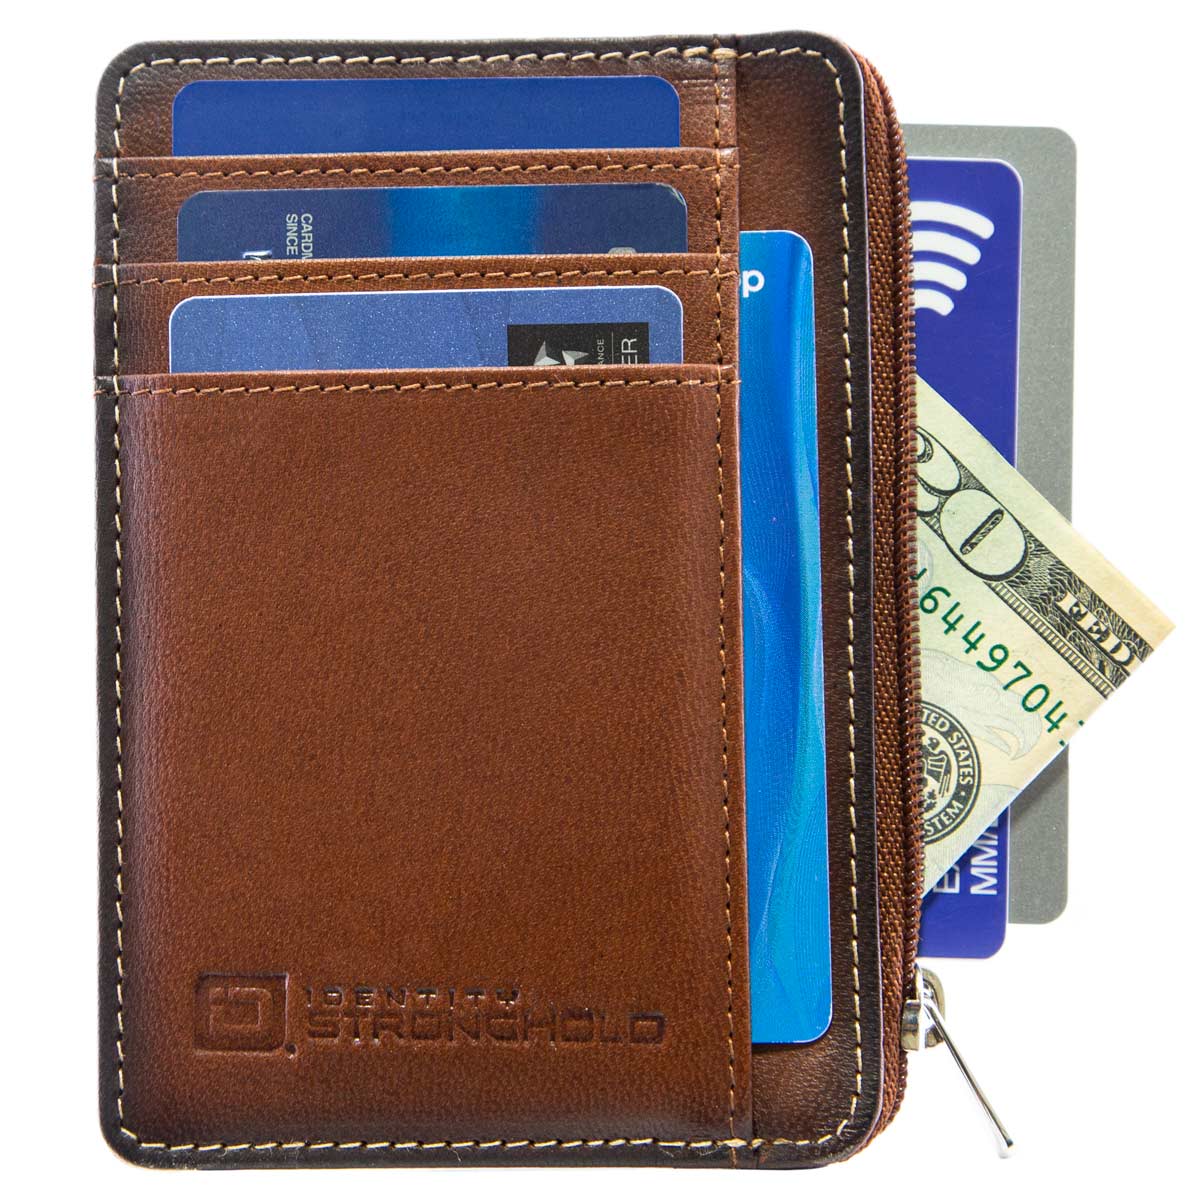 7004 Brown RFID Blocking Minimalist Wallet Features